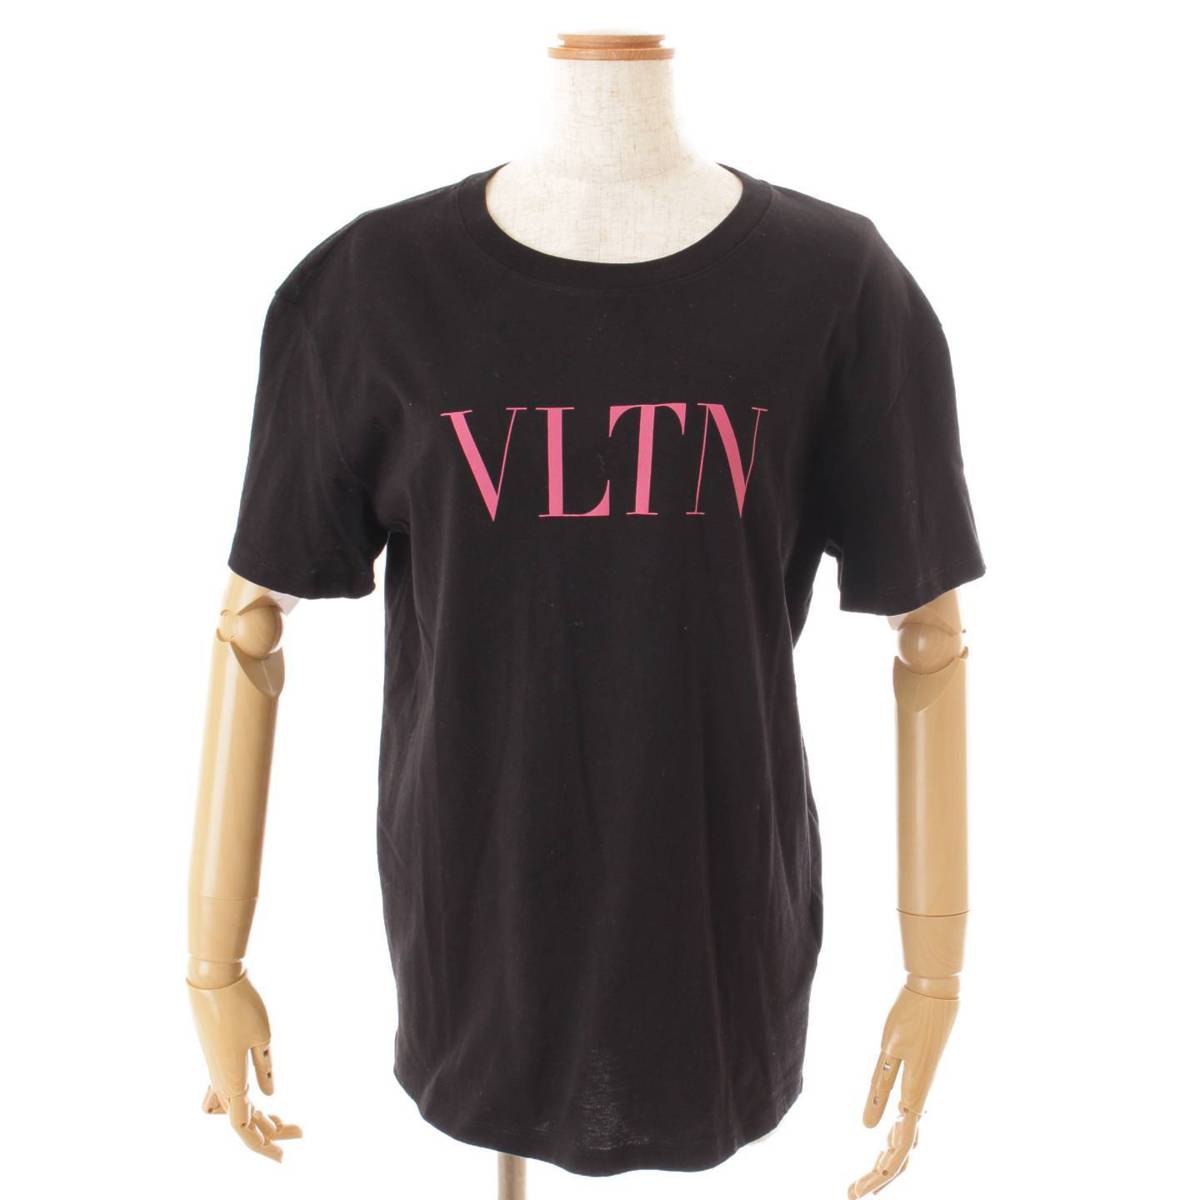 ヴァレンティノ(Valentino) カットソー VLTN ロゴ Tシャツ ブラック